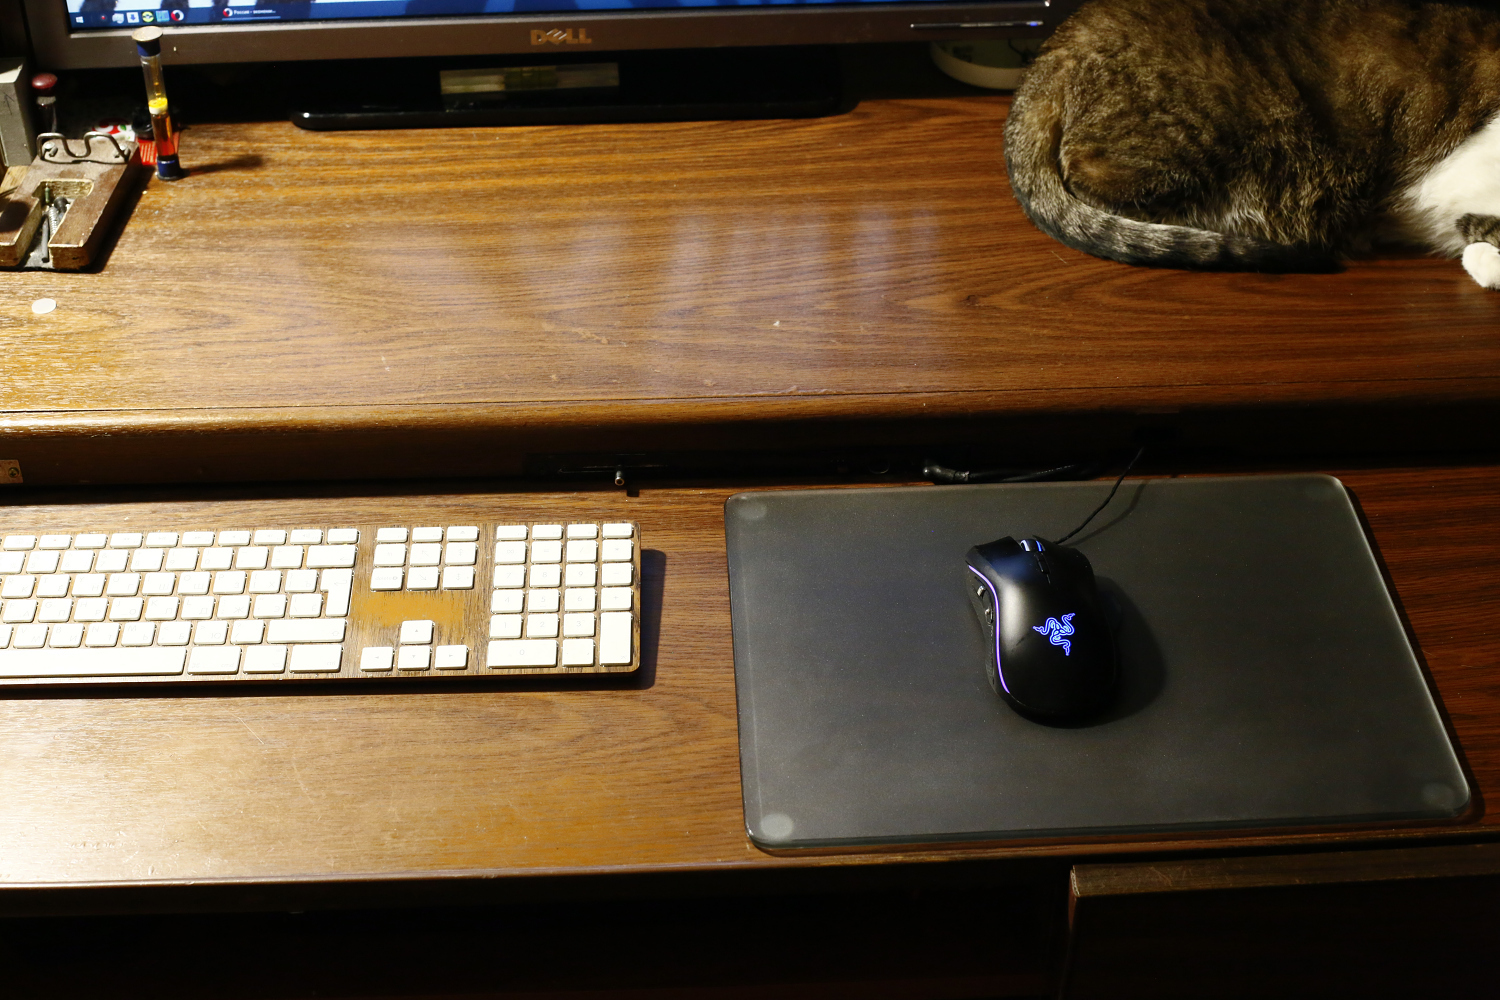 мышь не работает на коврике но работает на столе